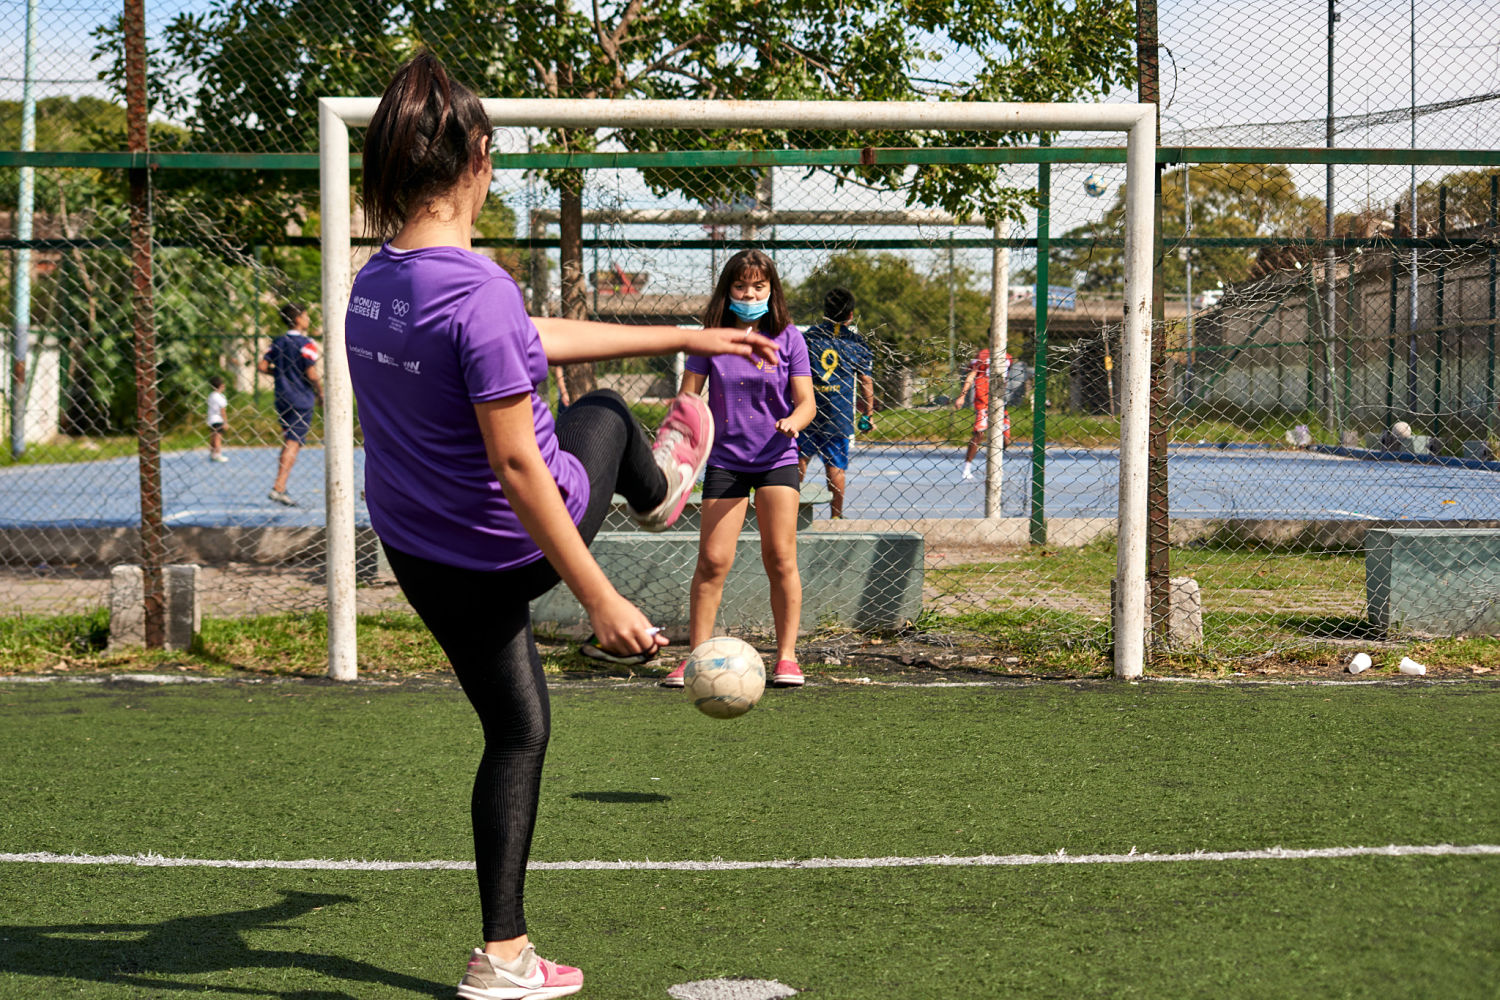 Una victoria lleva a la otra: más de 1.200 niñas  y jóvenes empoderadas a través del deporte 